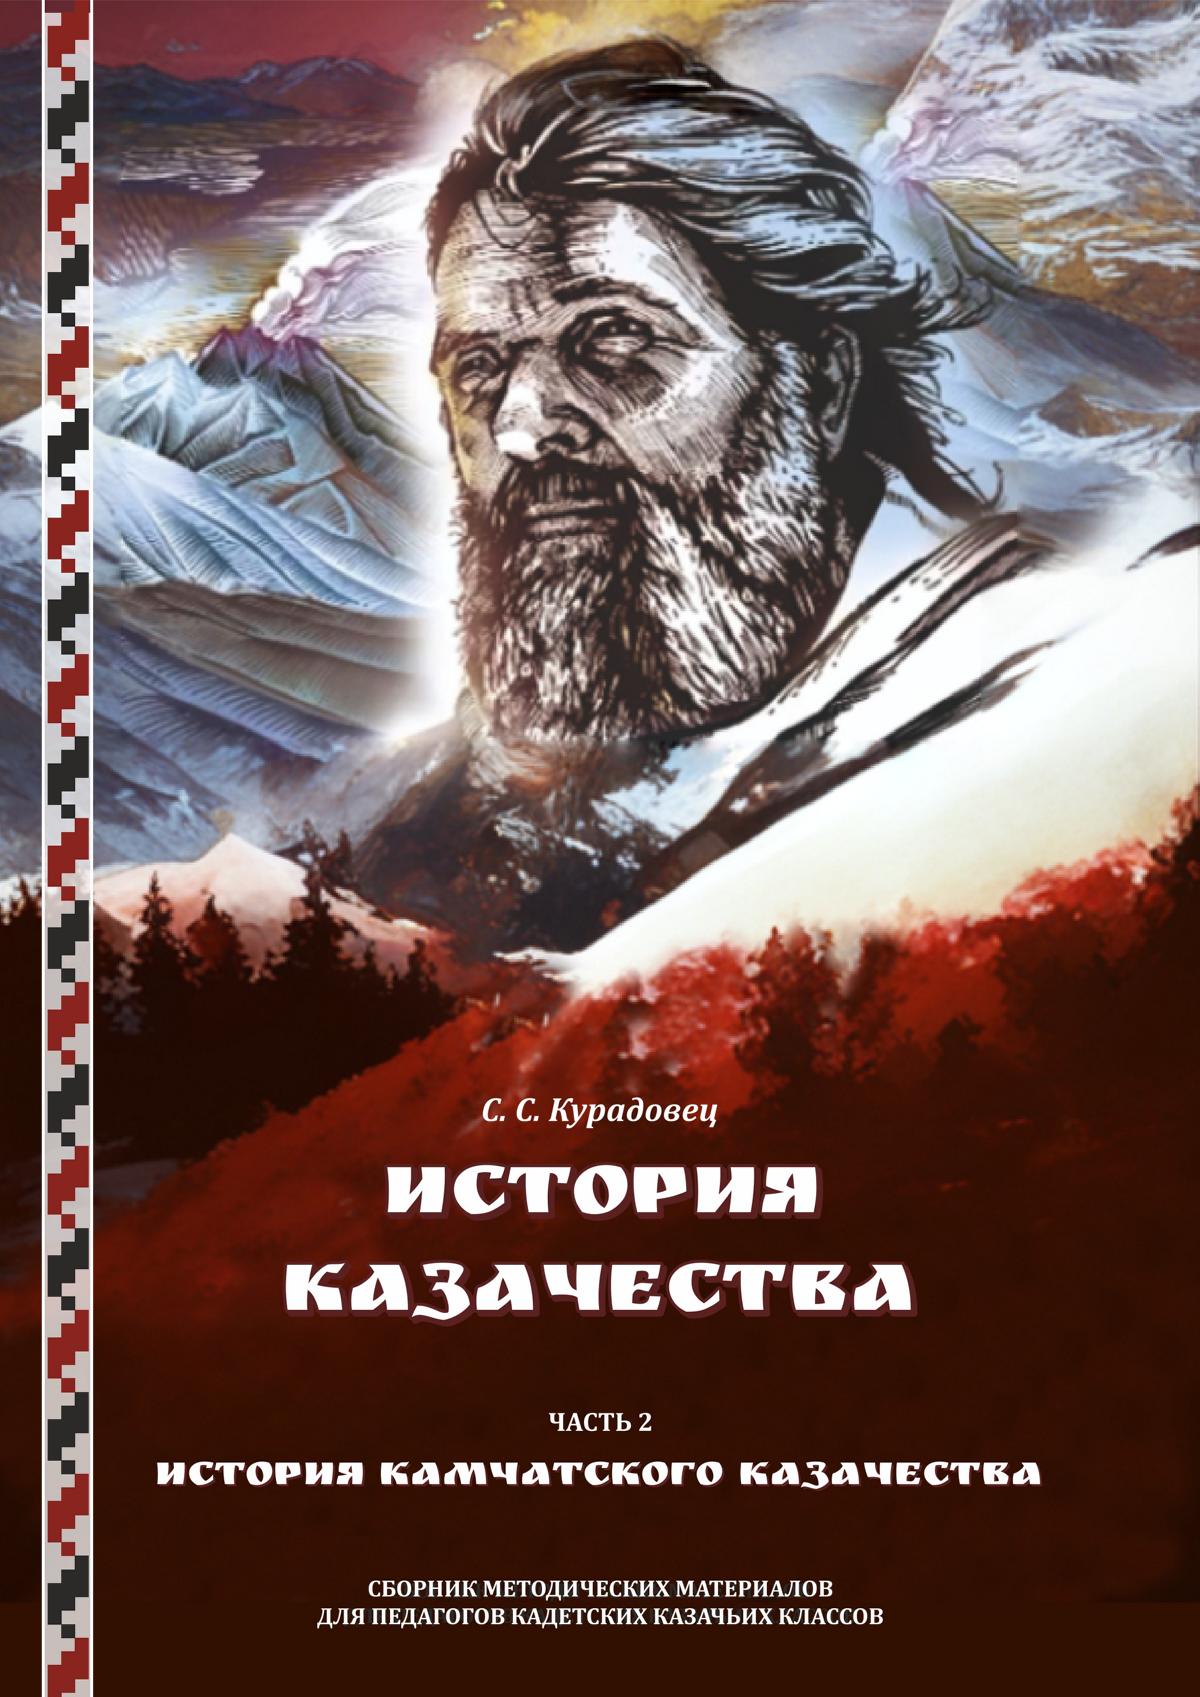 История казачества: в 2 частях. Часть 2: История камчатского казачества